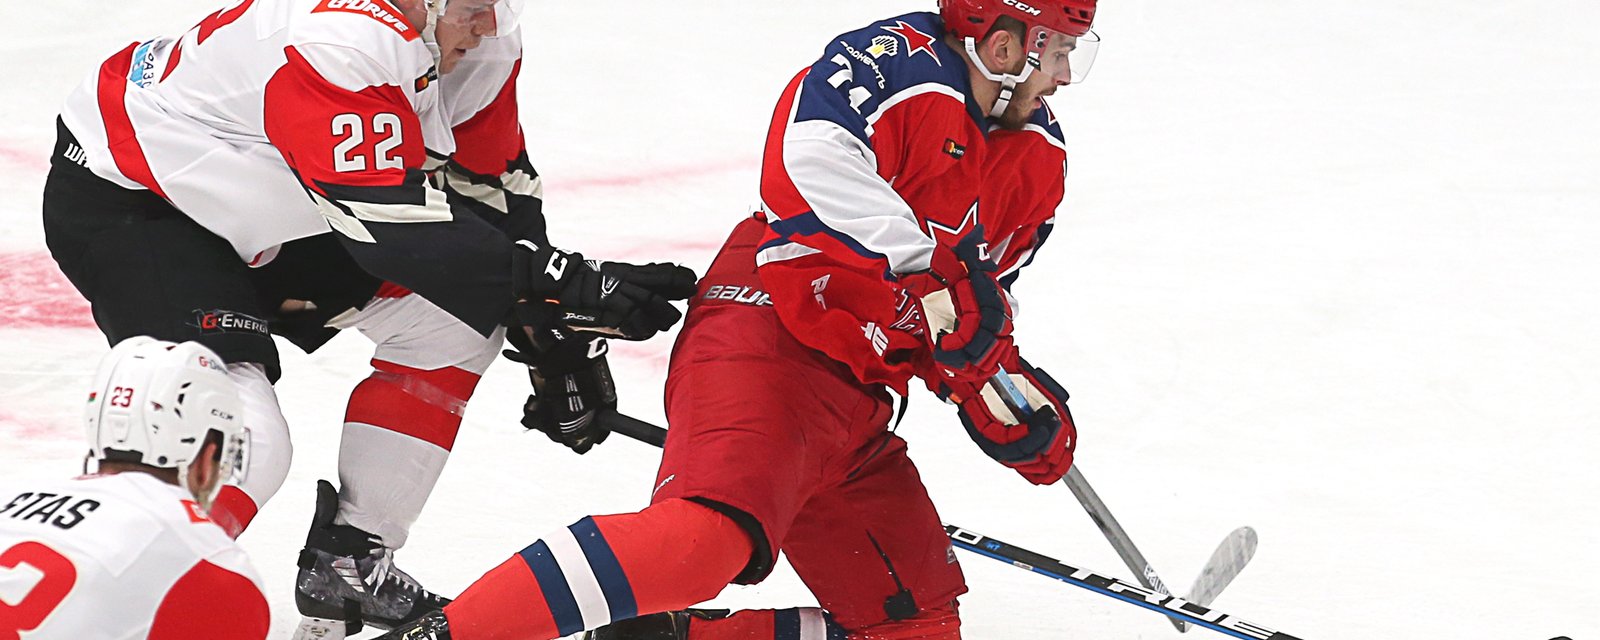 RUMEUR | Les Canadiens pourraient acquérir un joueur de la KHL